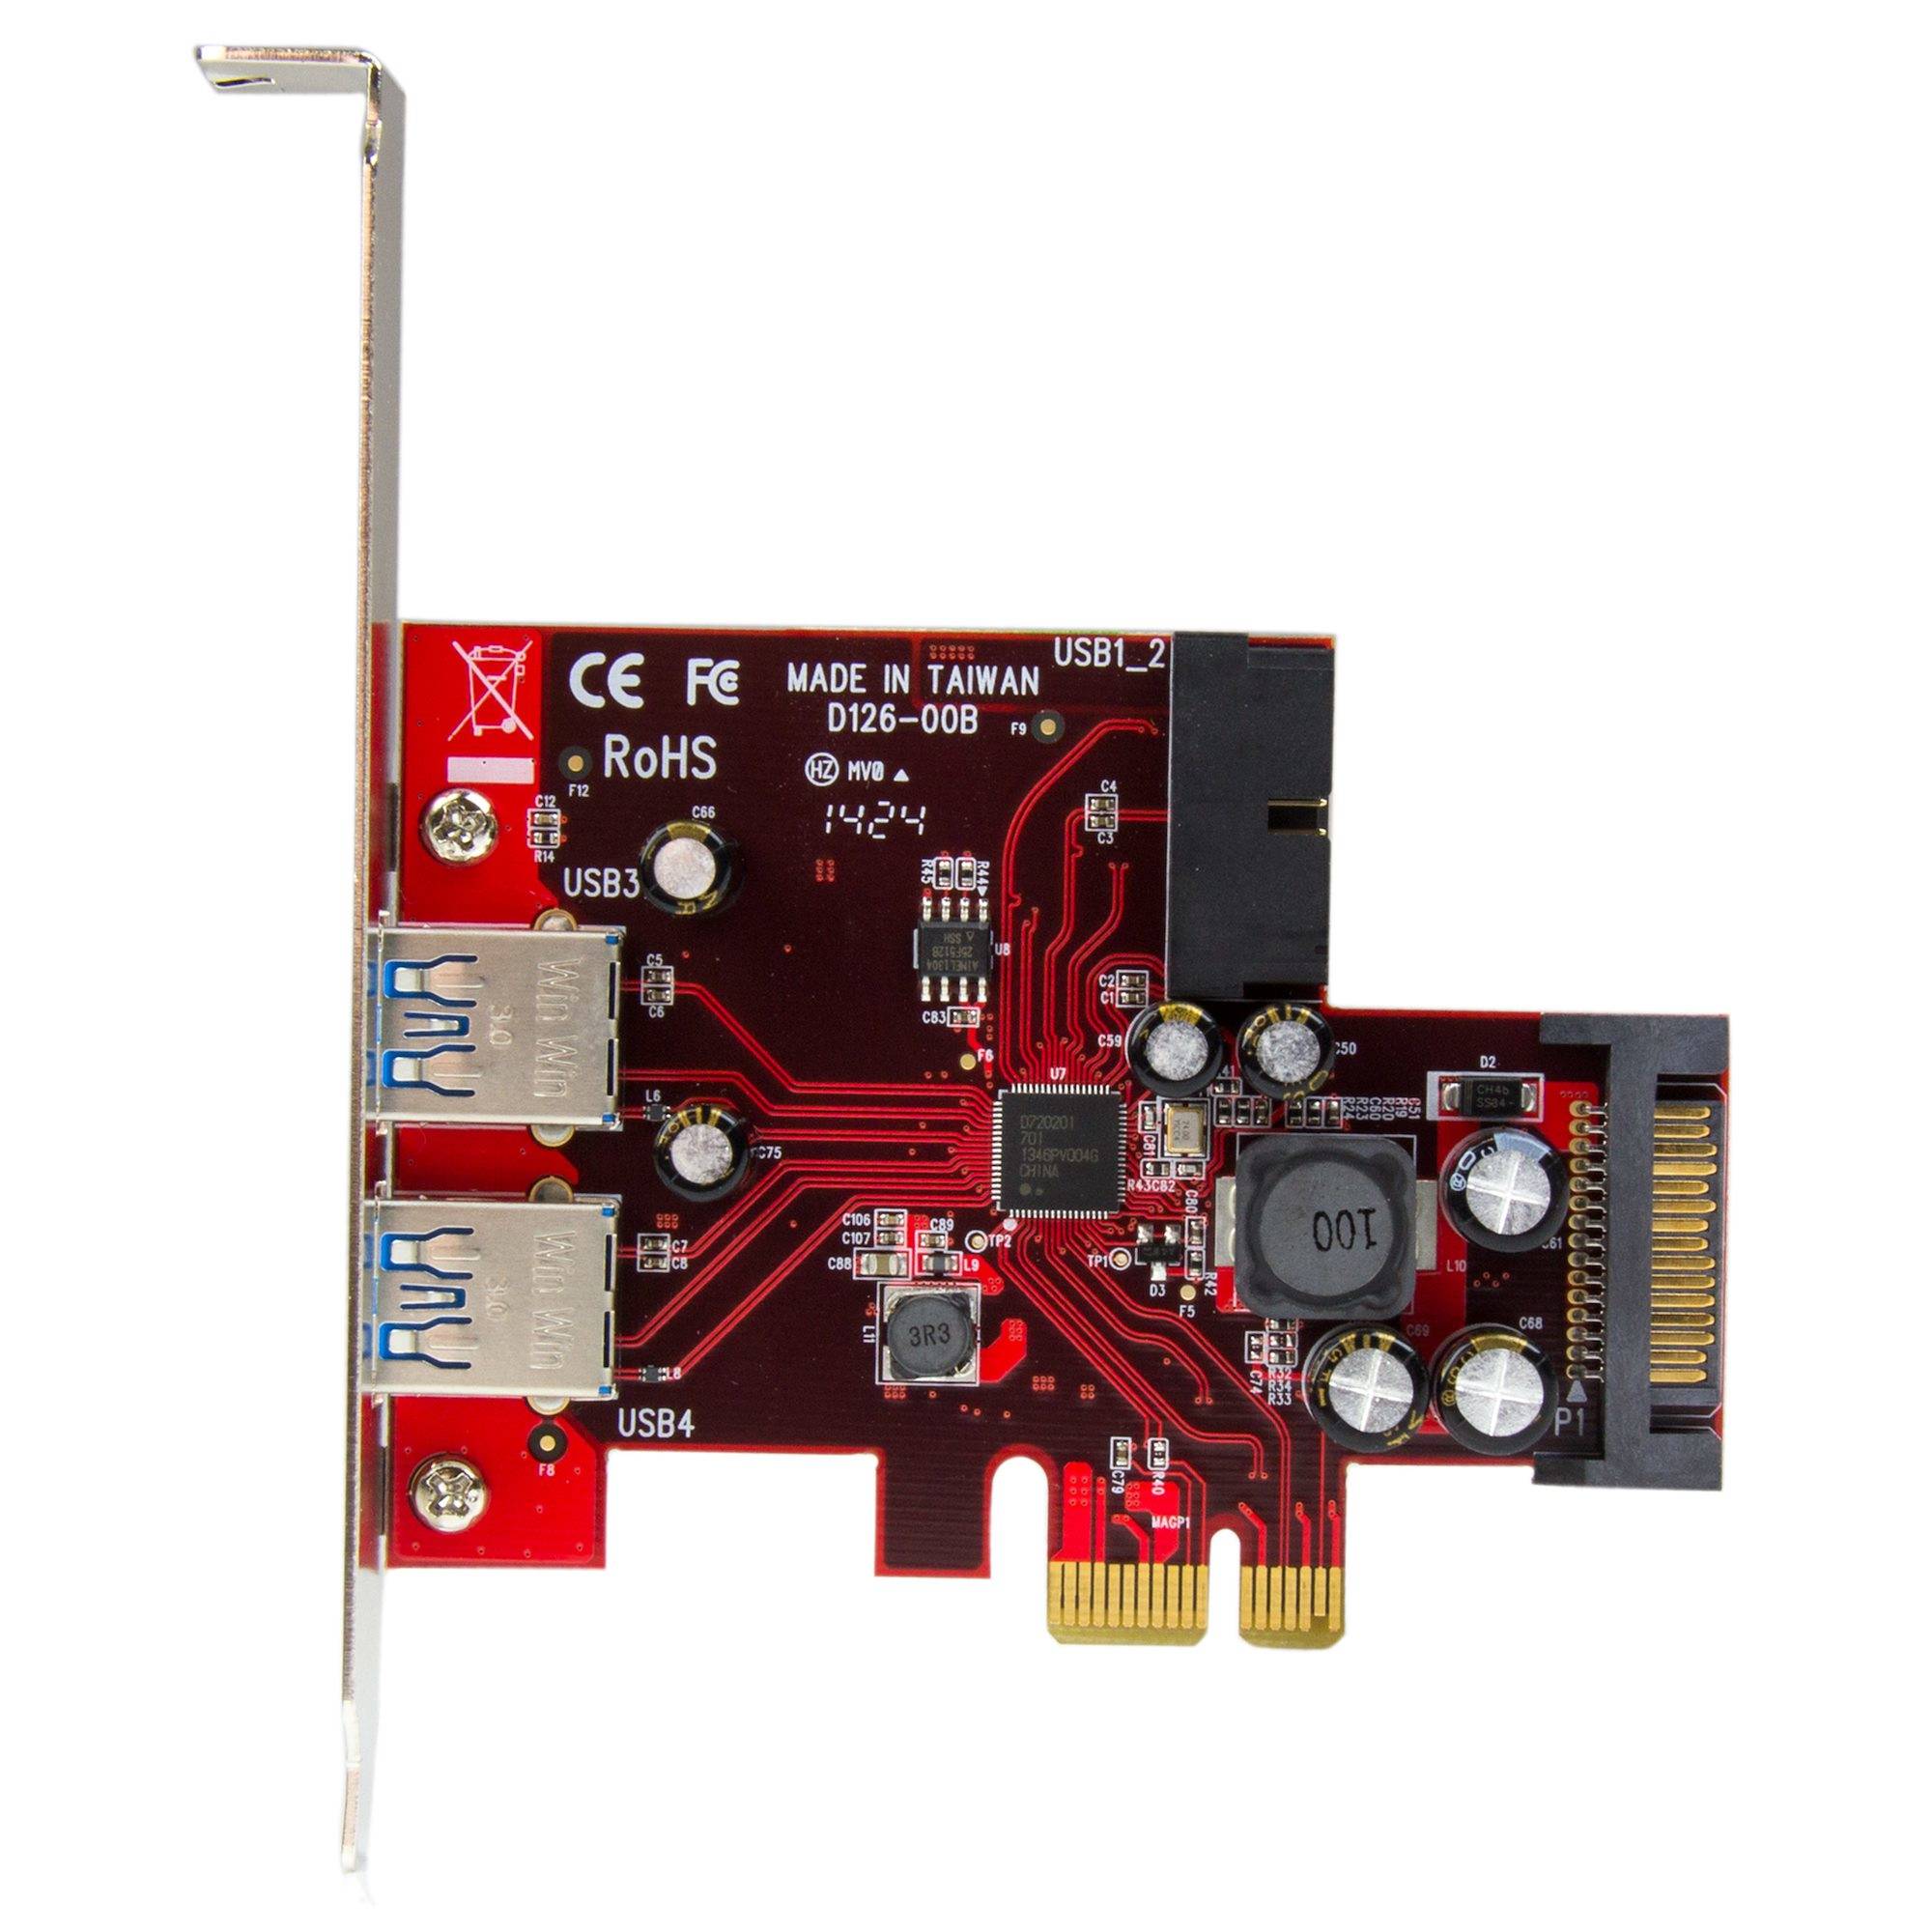 Rca Informatique - image du produit : CARTE CONTROLEUR PCIE 4 PORTS USB 3.0 AVEC UASP ET ALIM. SATA